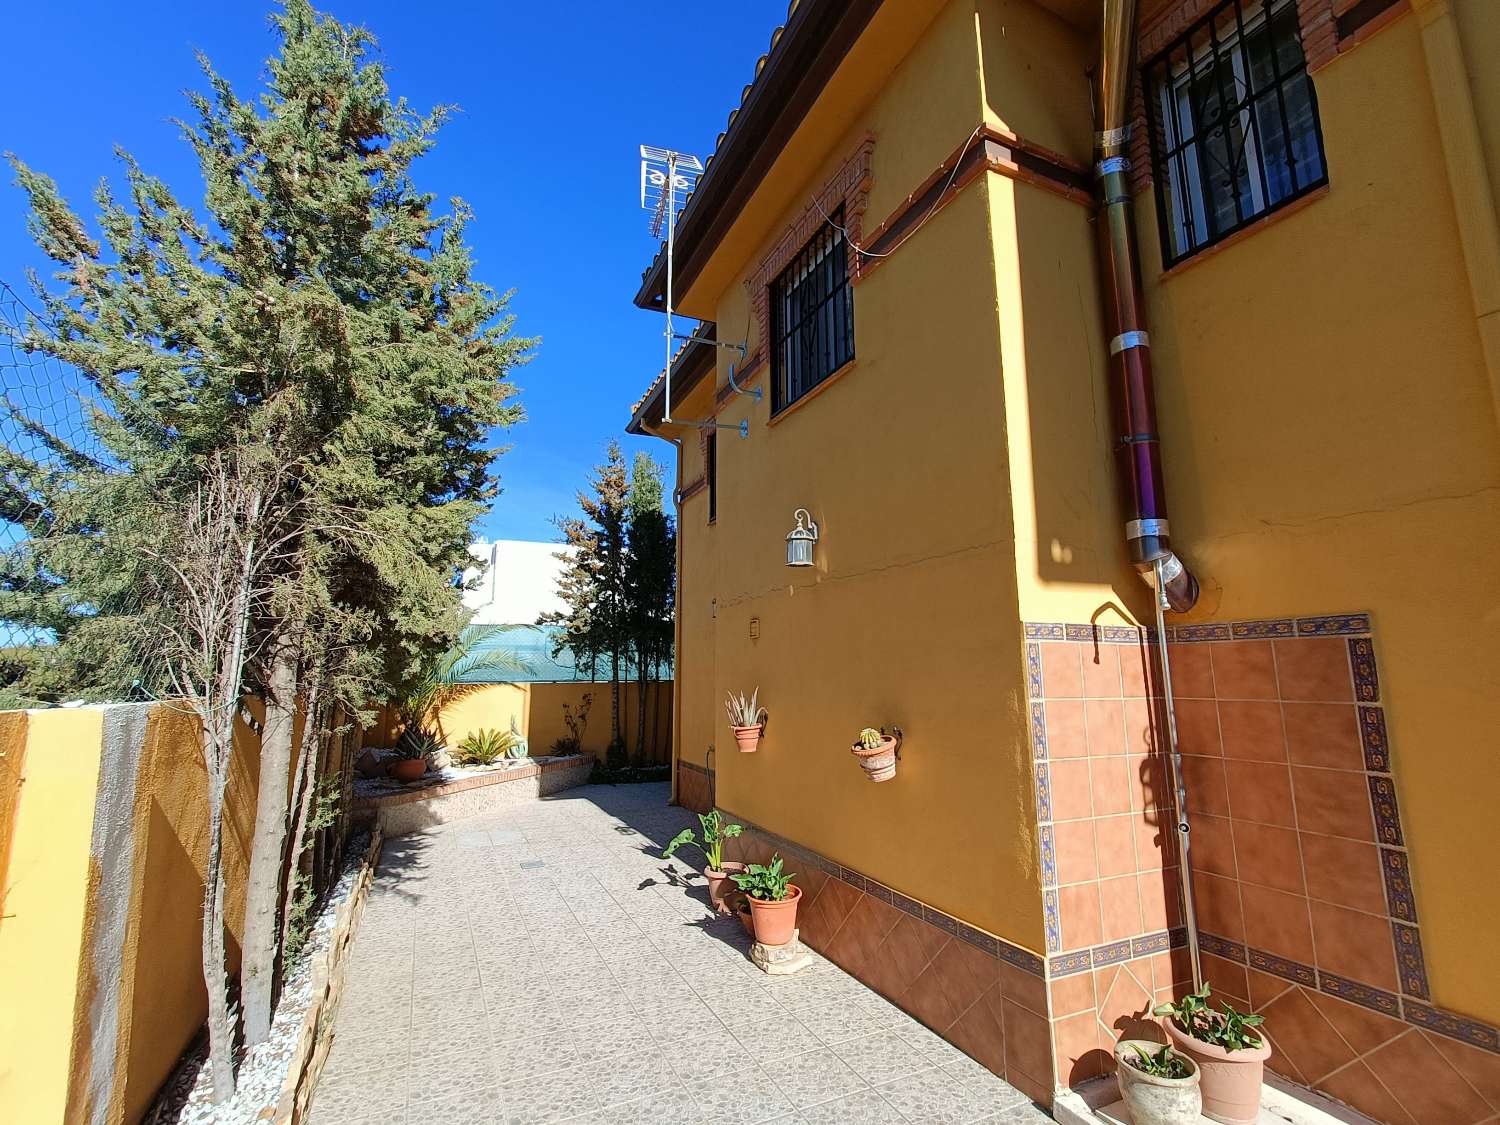 Stor enebolig med 2 separate leiligheter nær Granada by